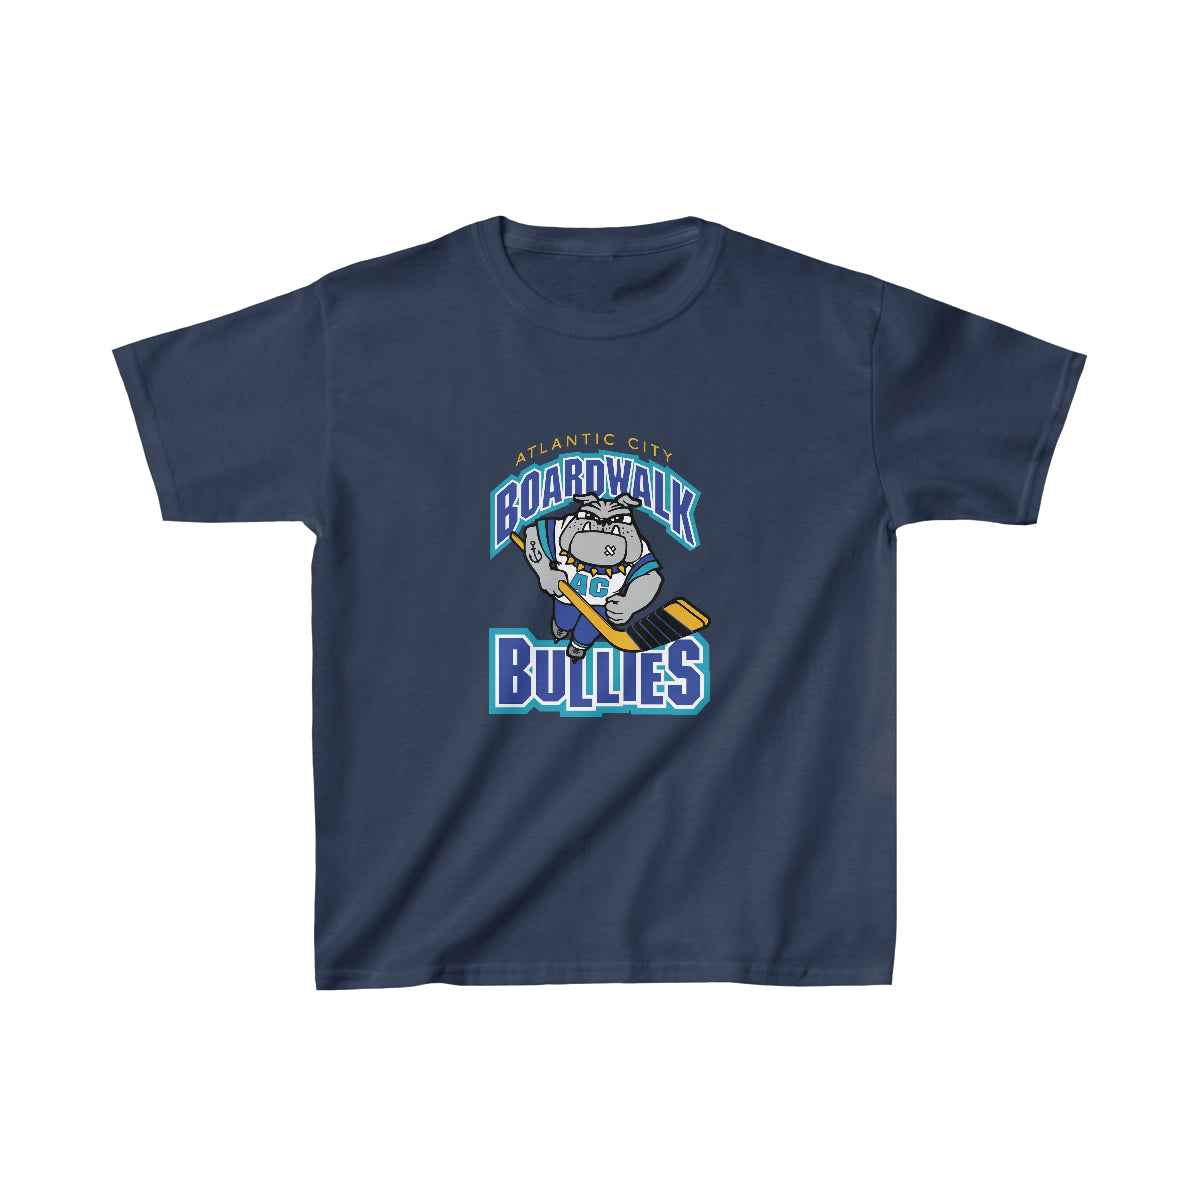 Atlantic City Boardwalk Bullies T-Shirt (Youth)